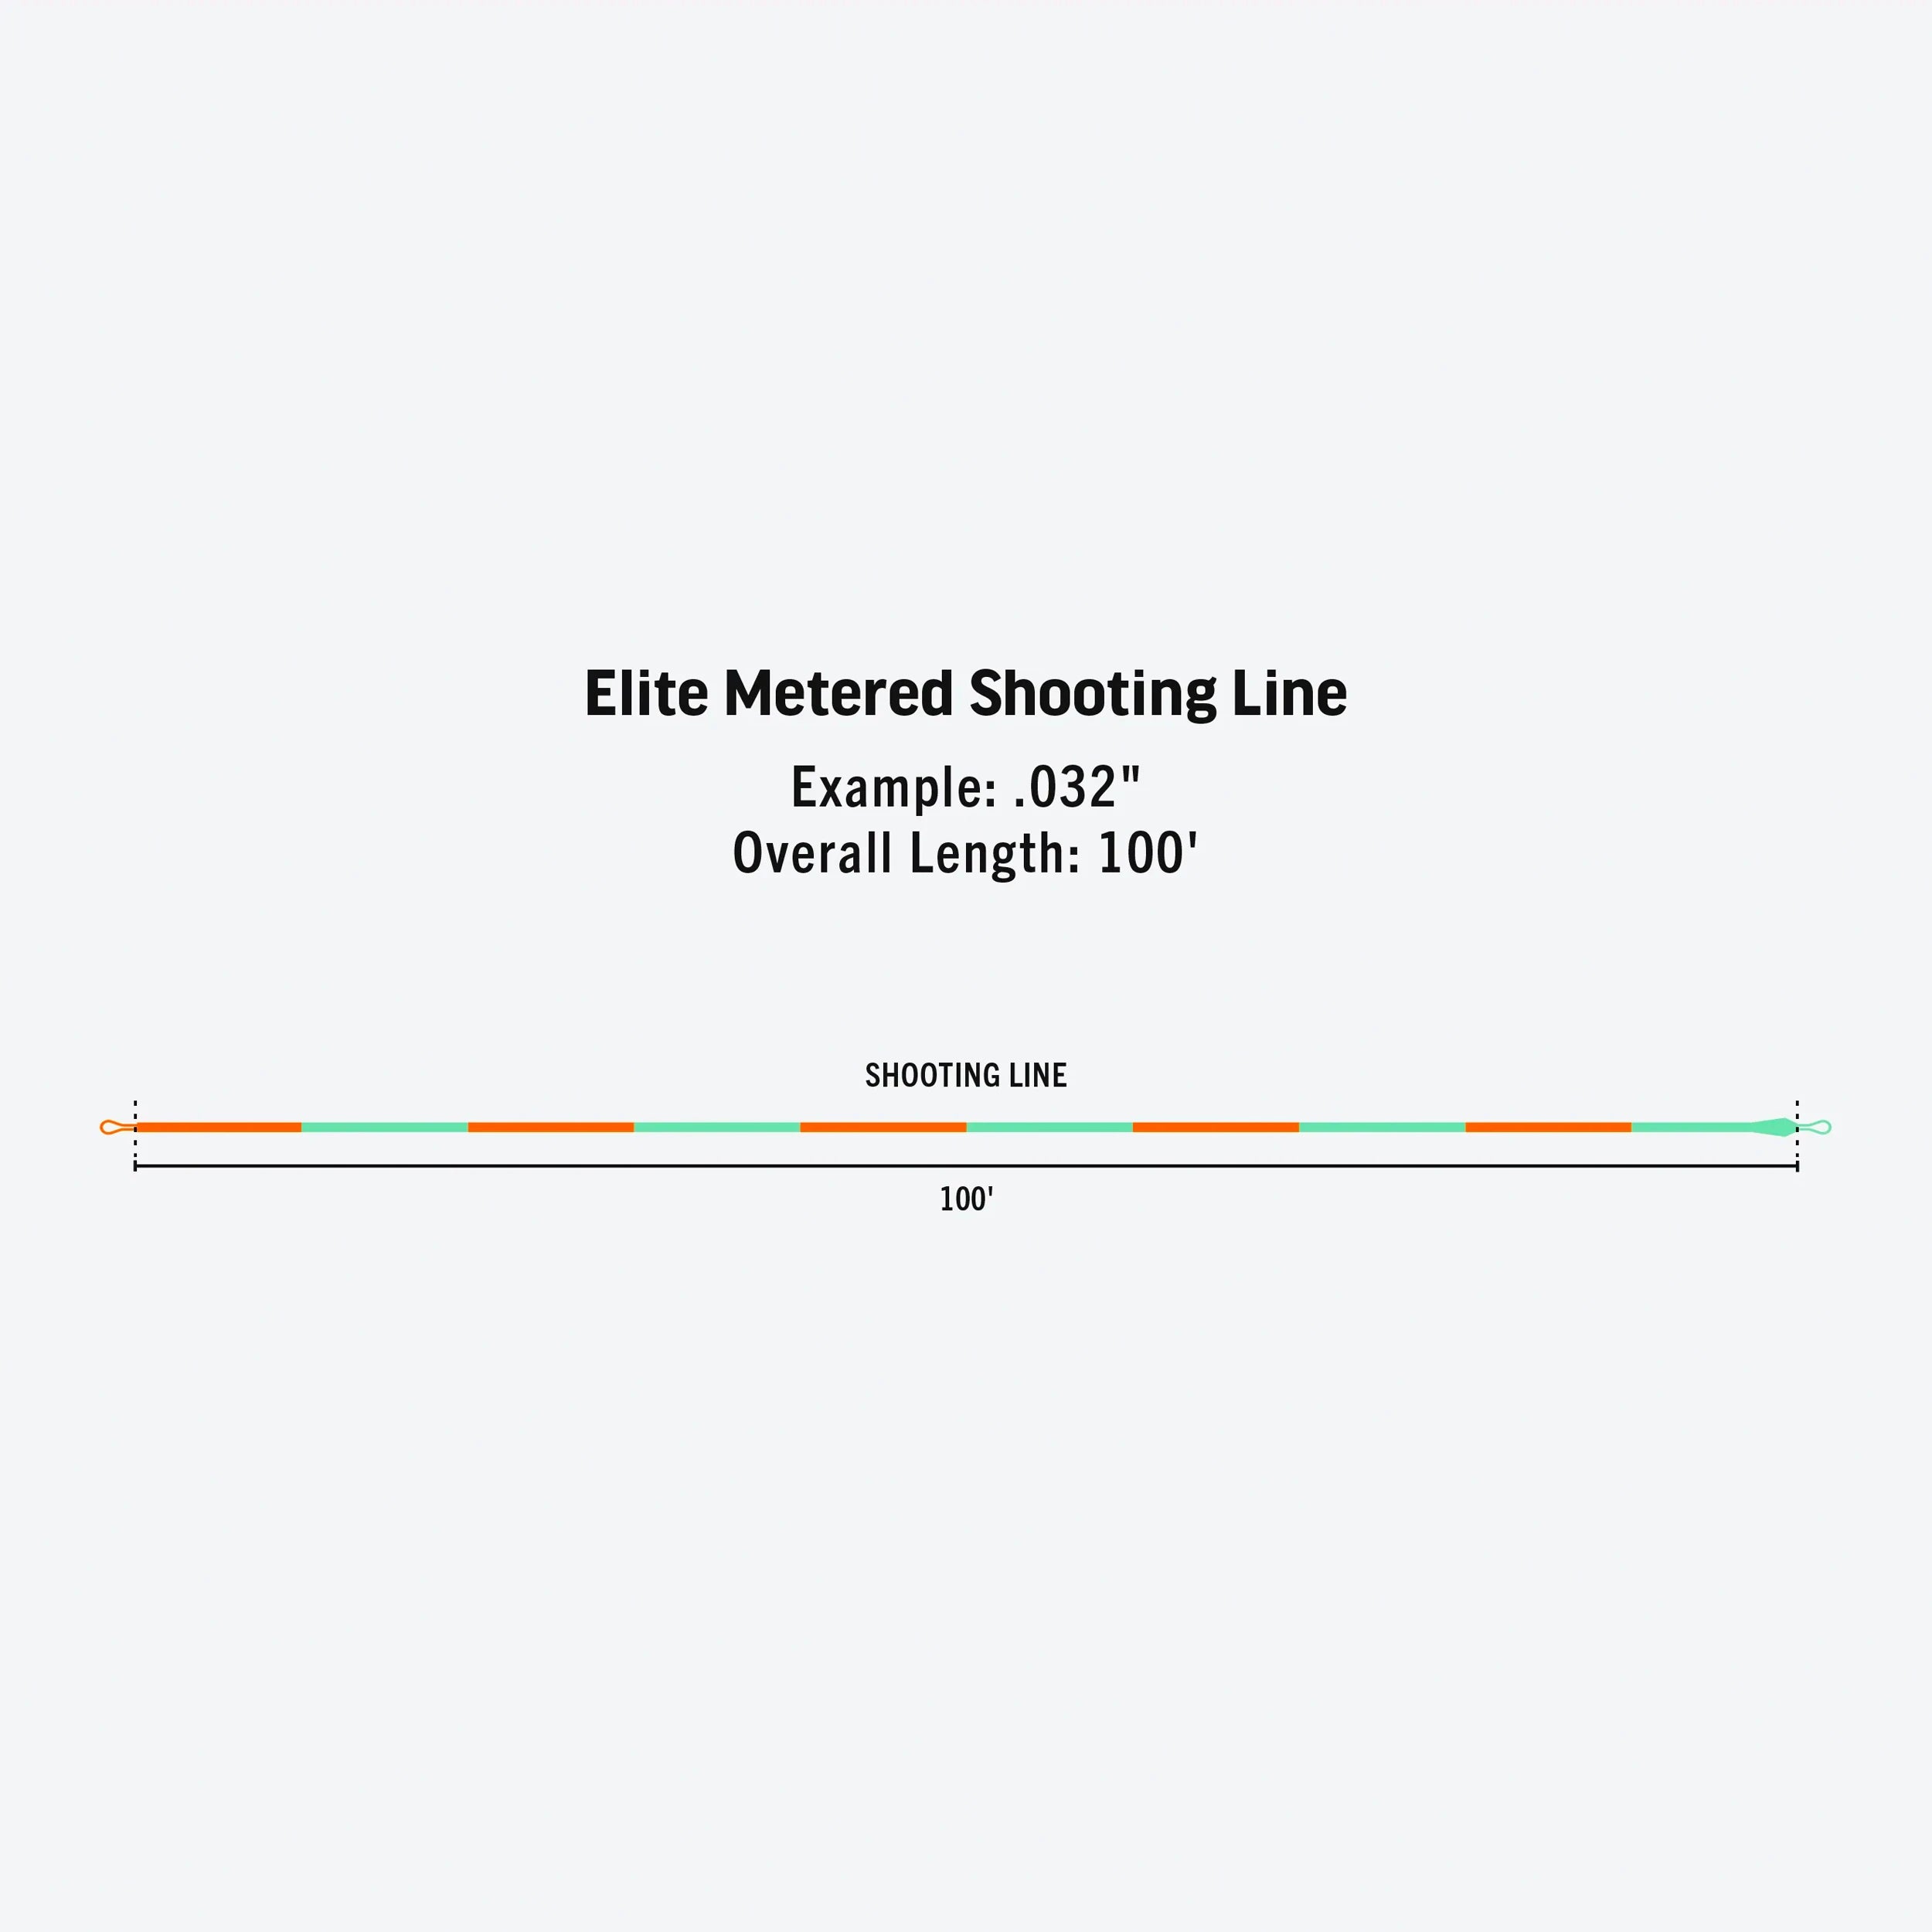 ELITE METERED SHOOTING LINE